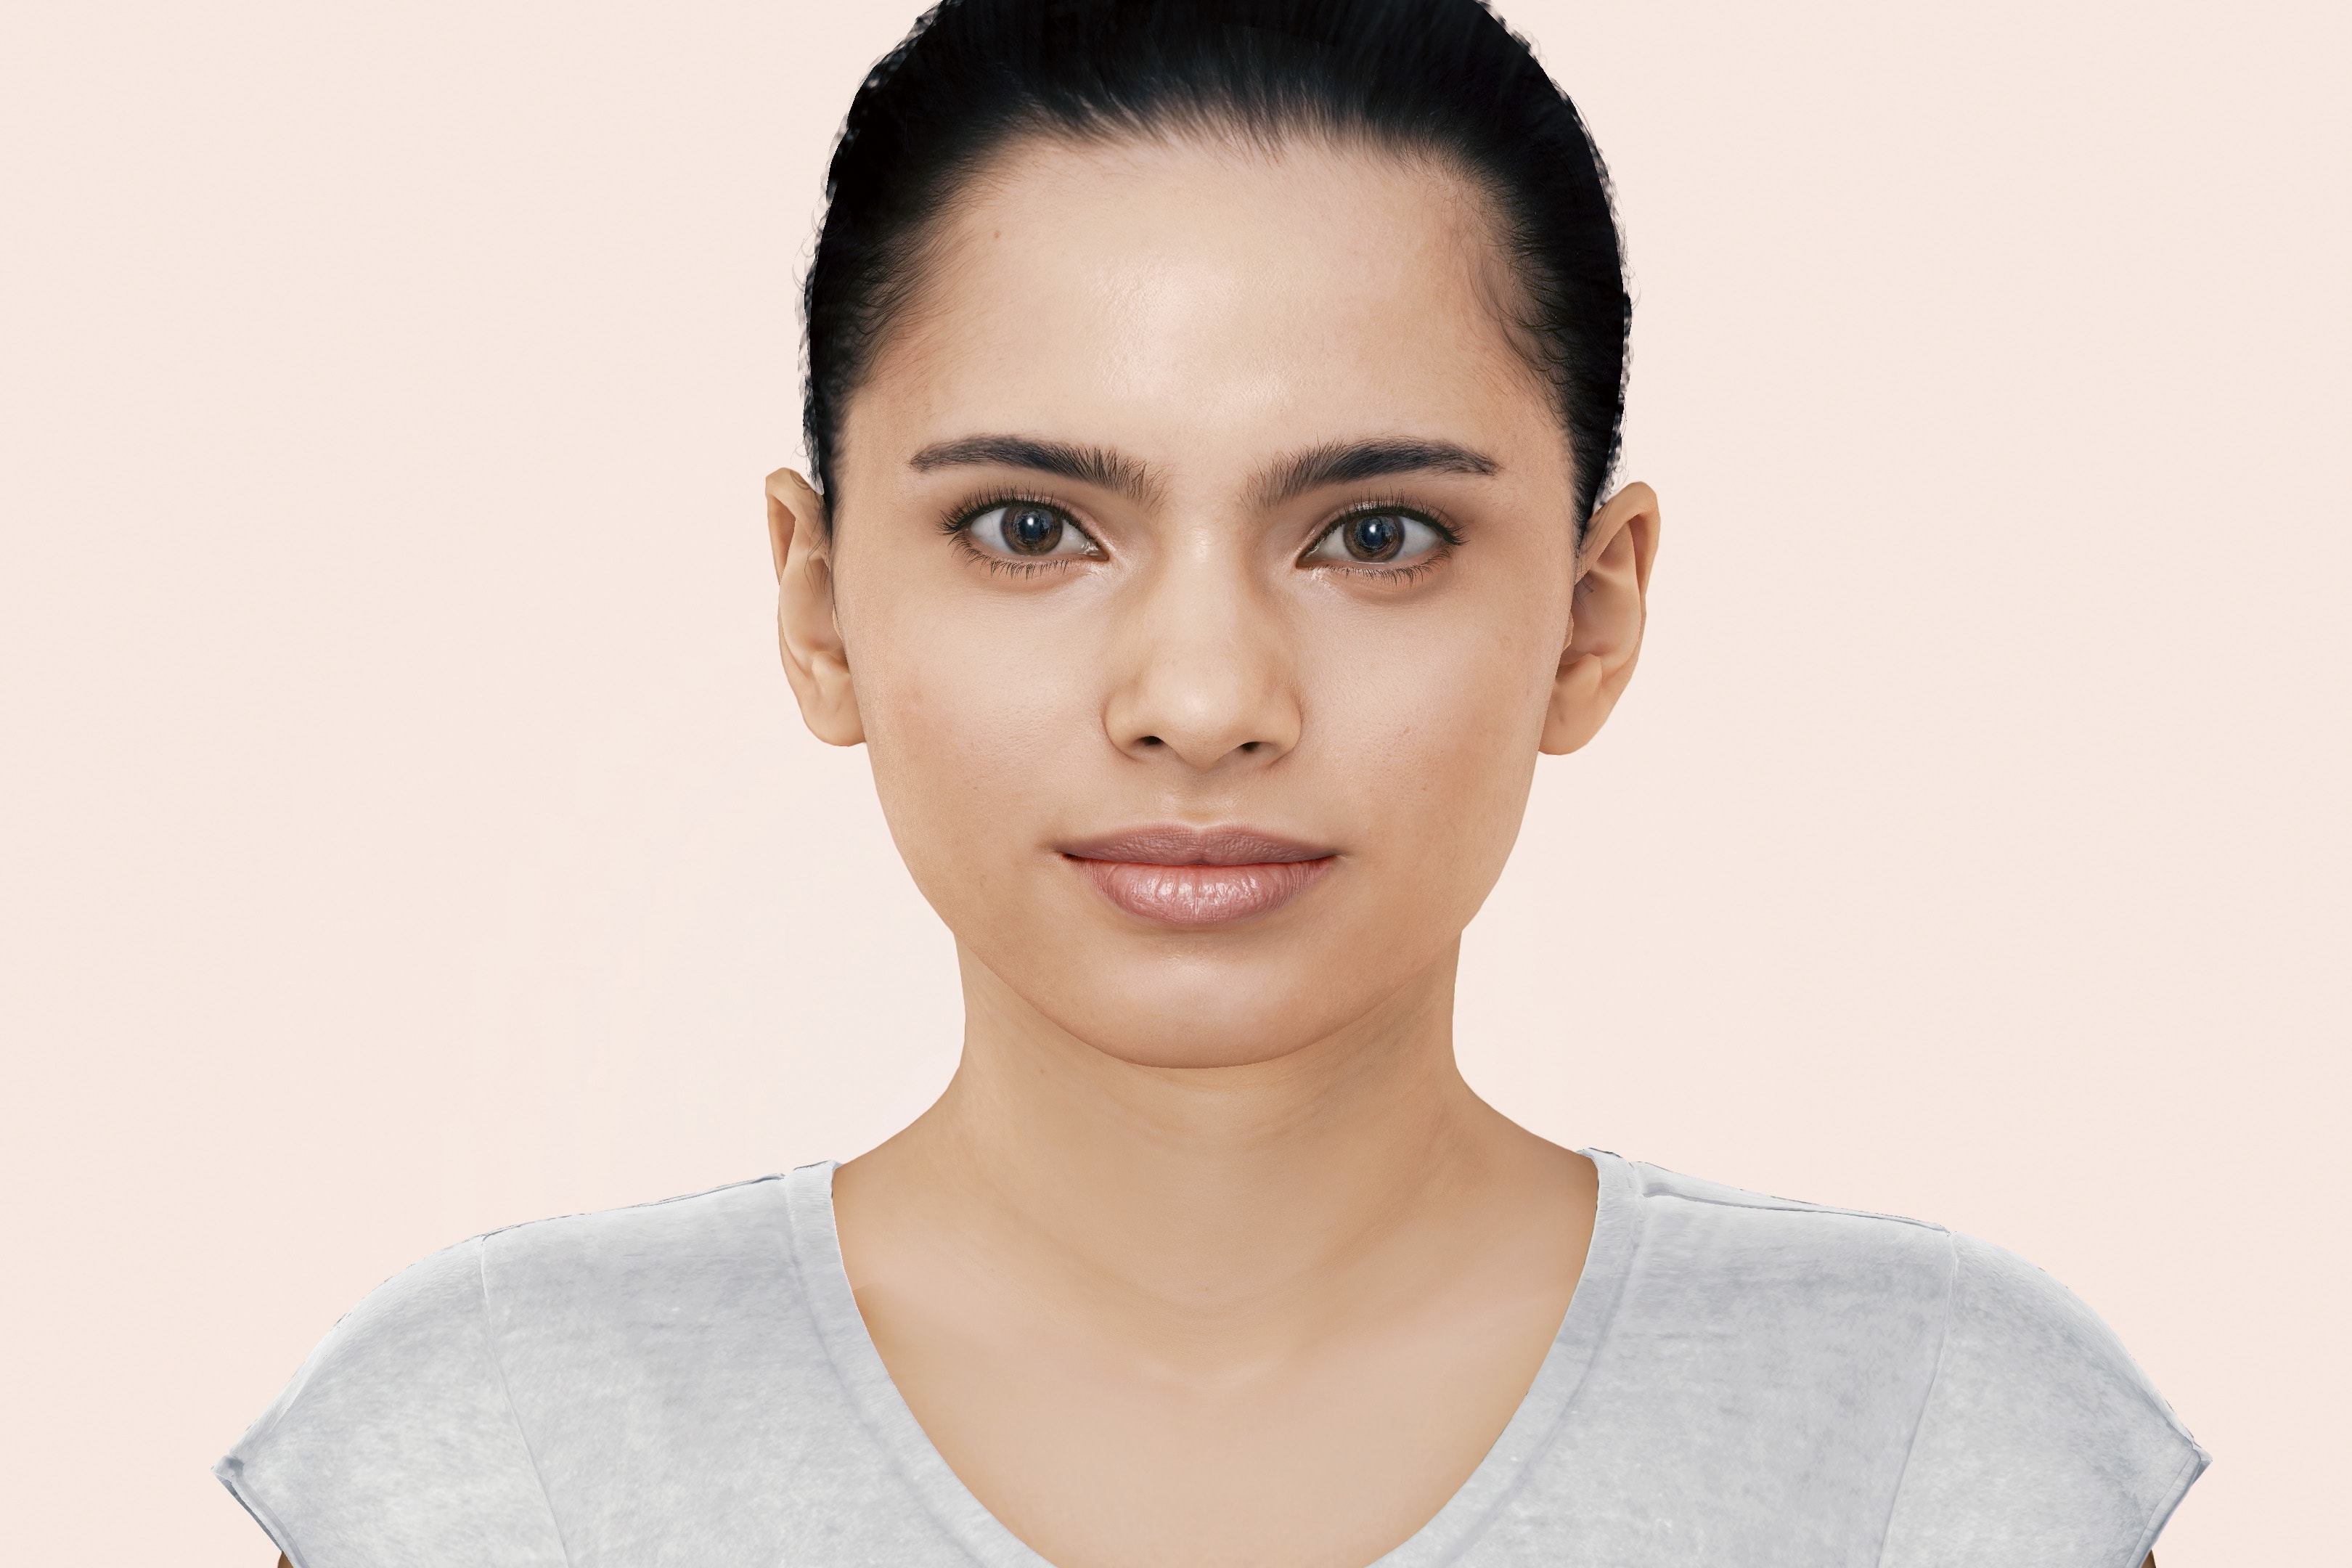 SK-II AI Digital Influencer Skincare Ambassador Beauty Technology Promotion Future Ad Face 